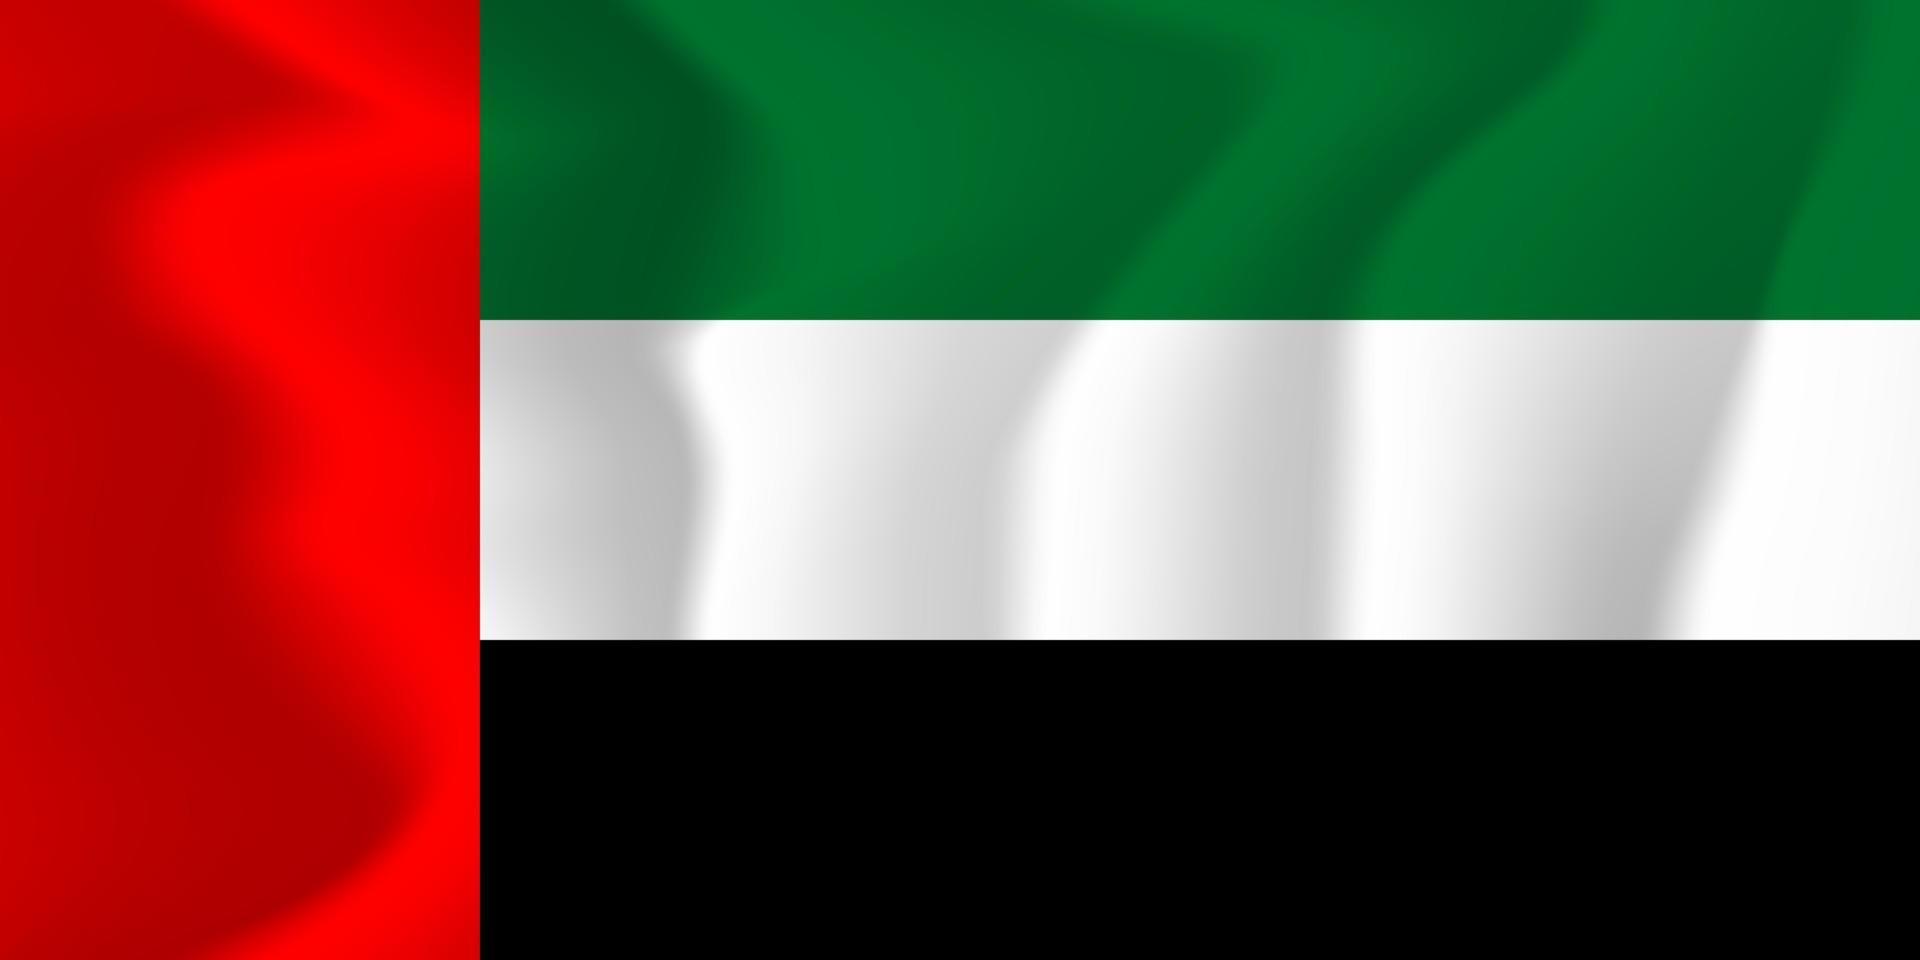 United Arab Emirates National Waving Flag Background Illustration vector